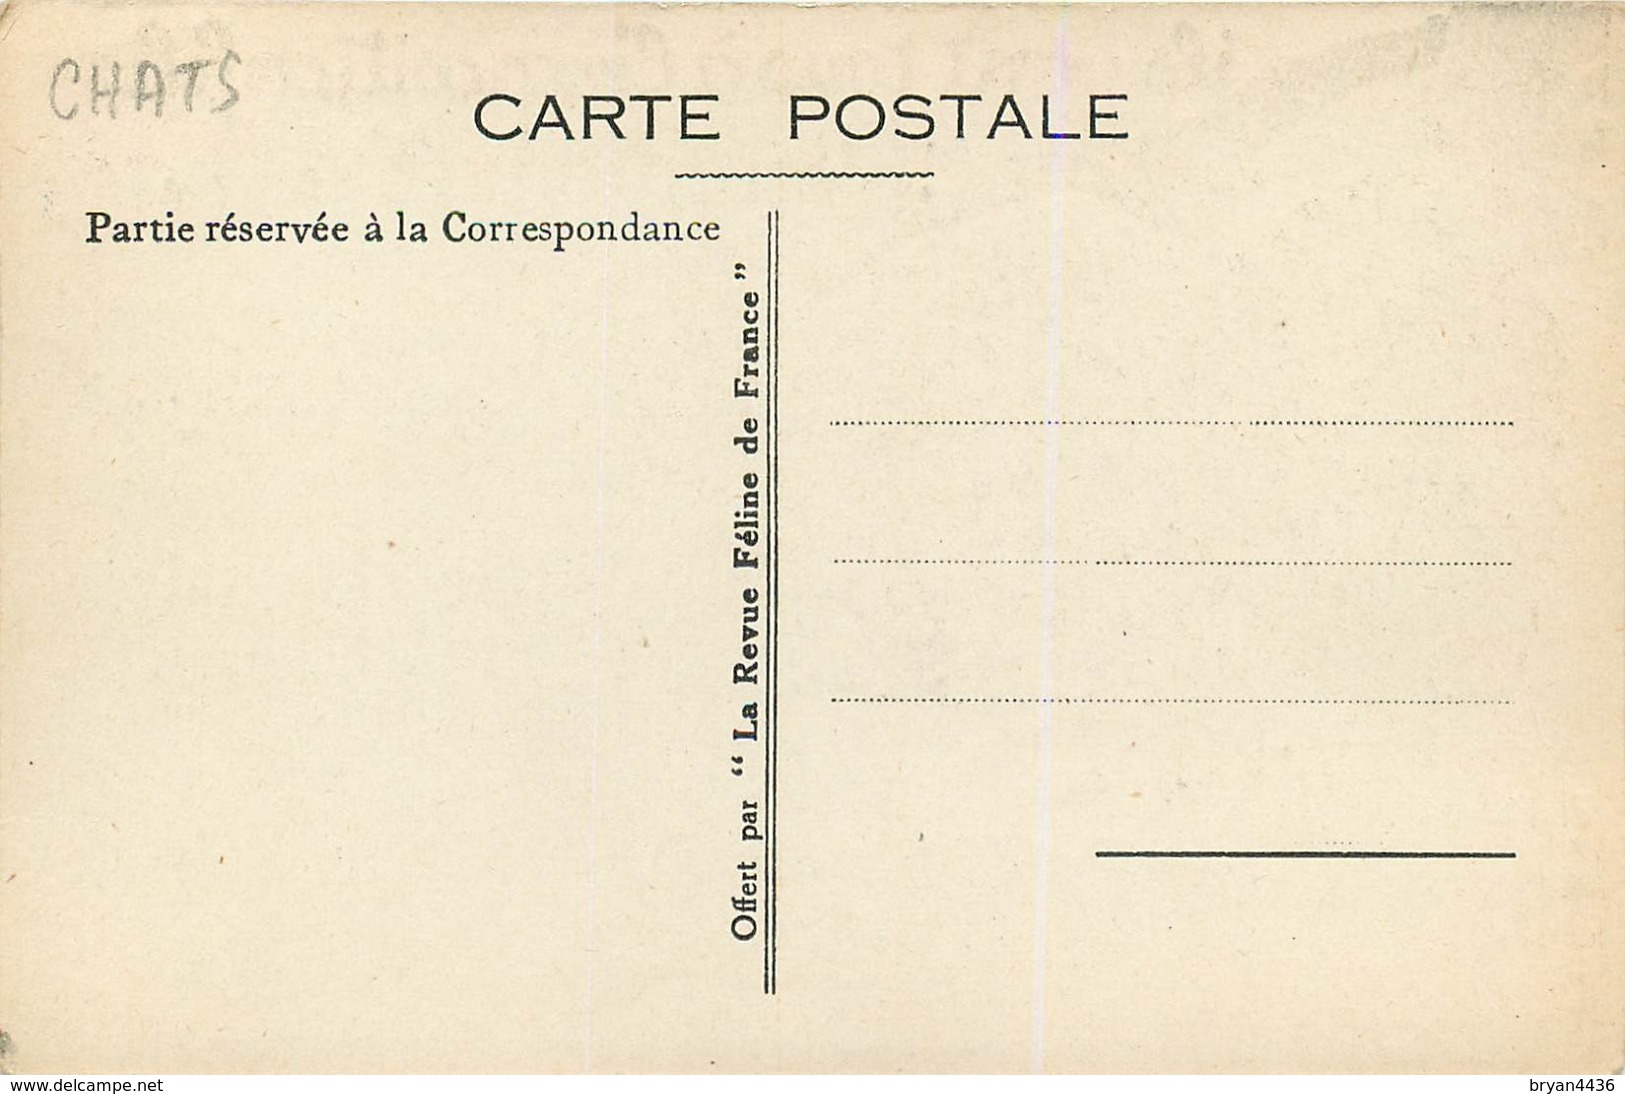 RARE - EXPOSITION FELINE INTERNARTIONAL DE PARIS - CHATS - CPA PUB - ILLUSTRATEUR; CASTHELAN - 1933 - TBE. - Katzen